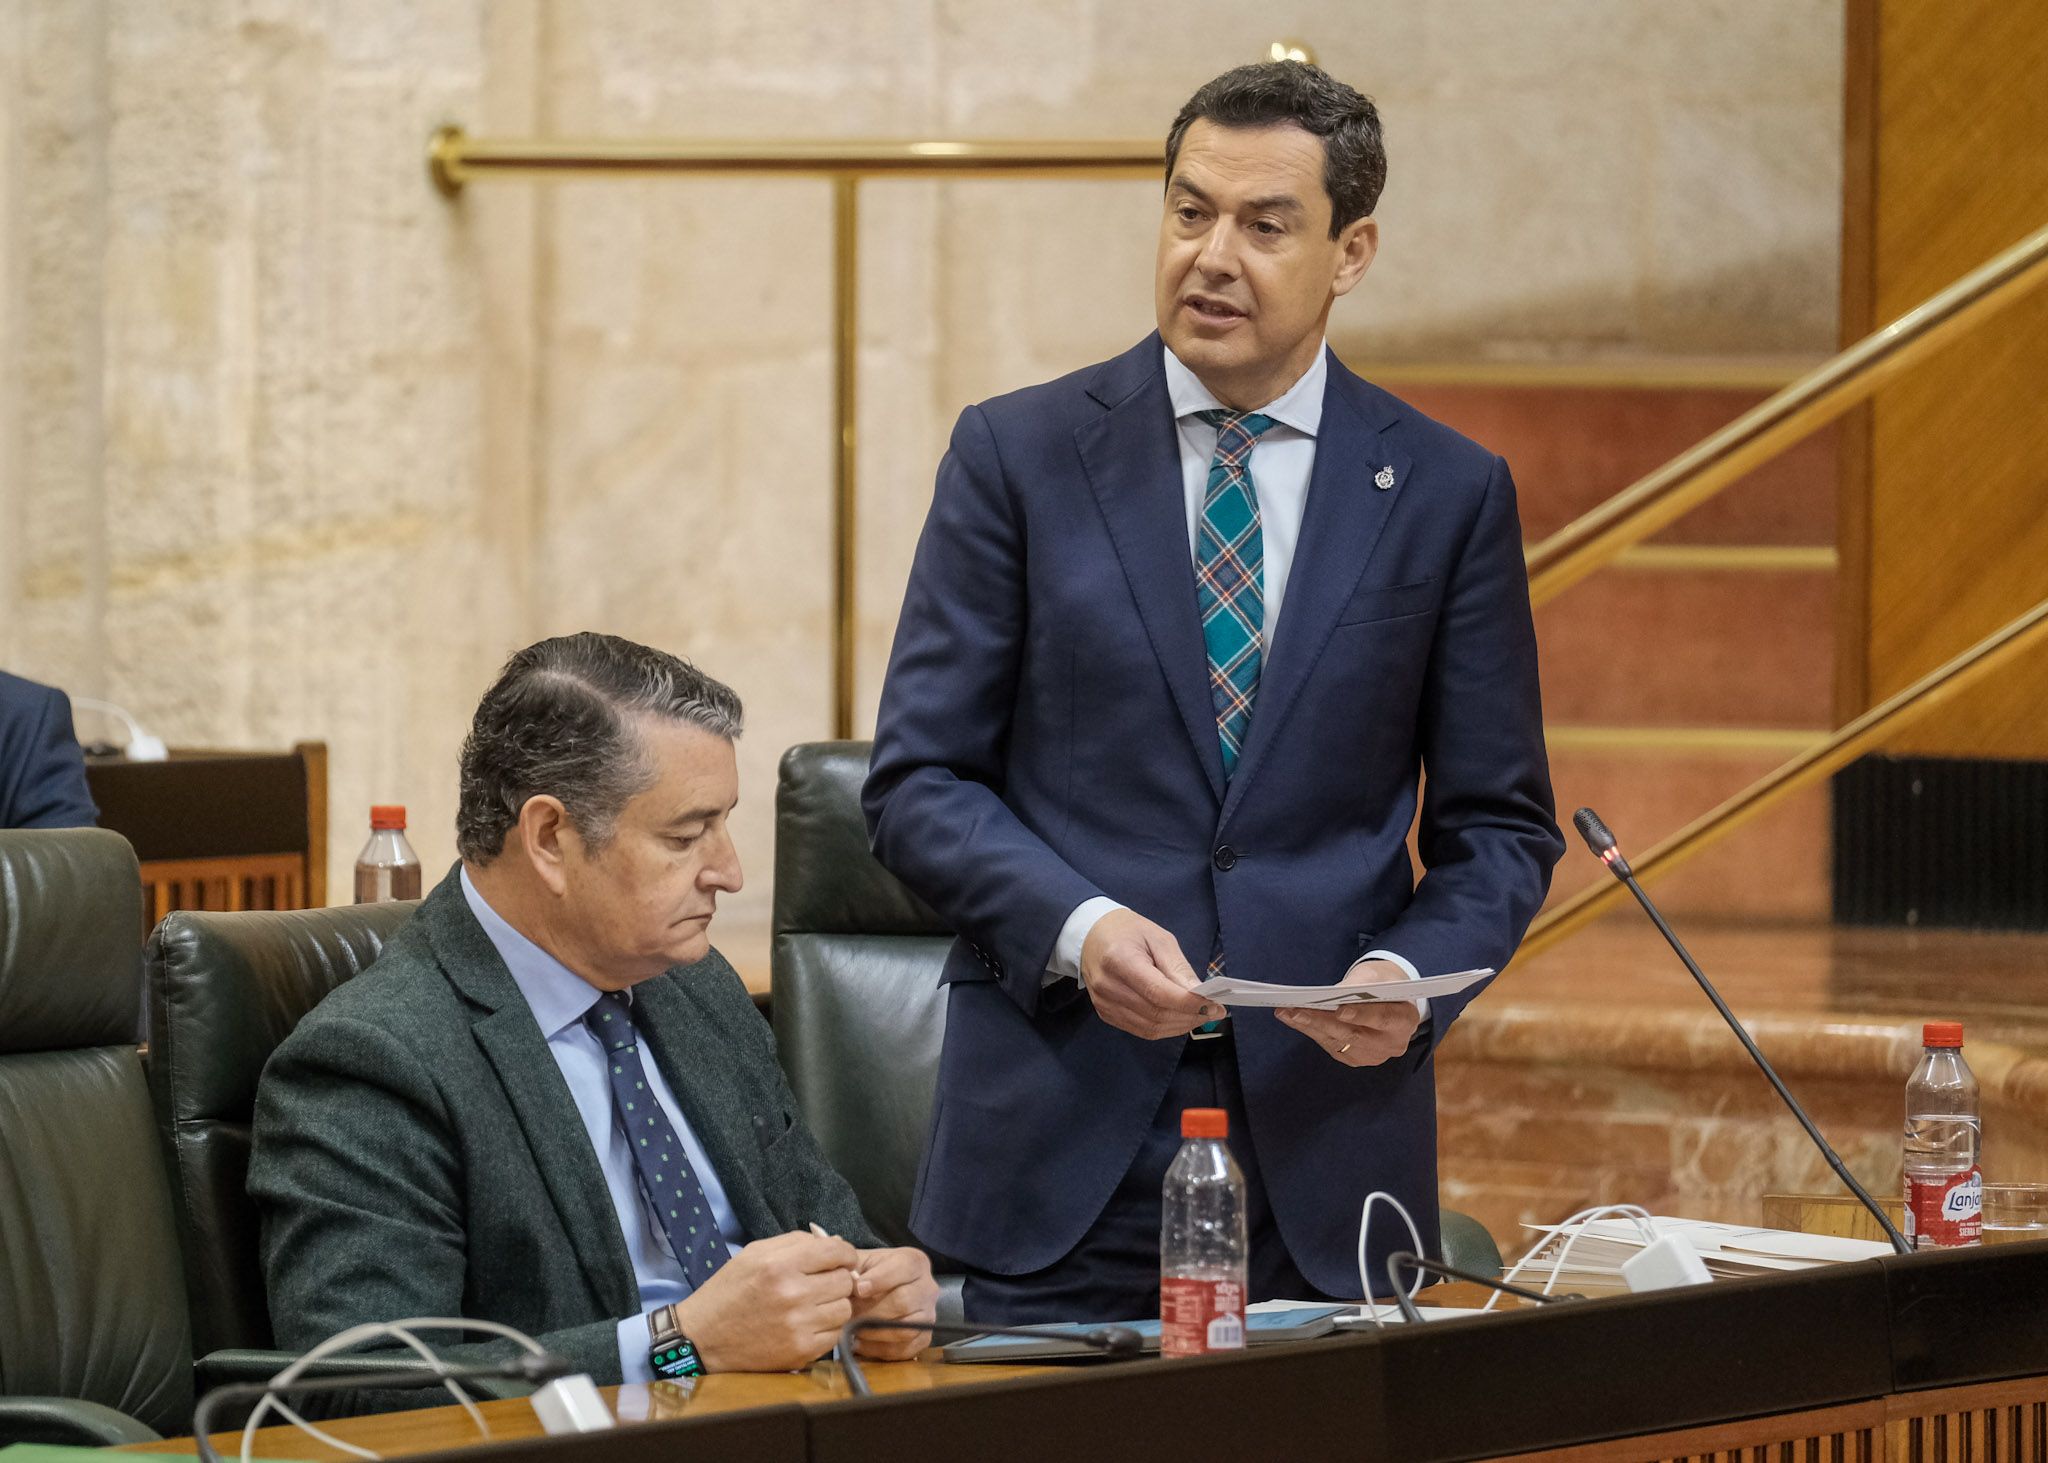 El presidente Moreno, este jueves en el Parlamento andaluz, reacciona ante las críticas del PSOE y ordena informar ya sobre los fondos europeos.